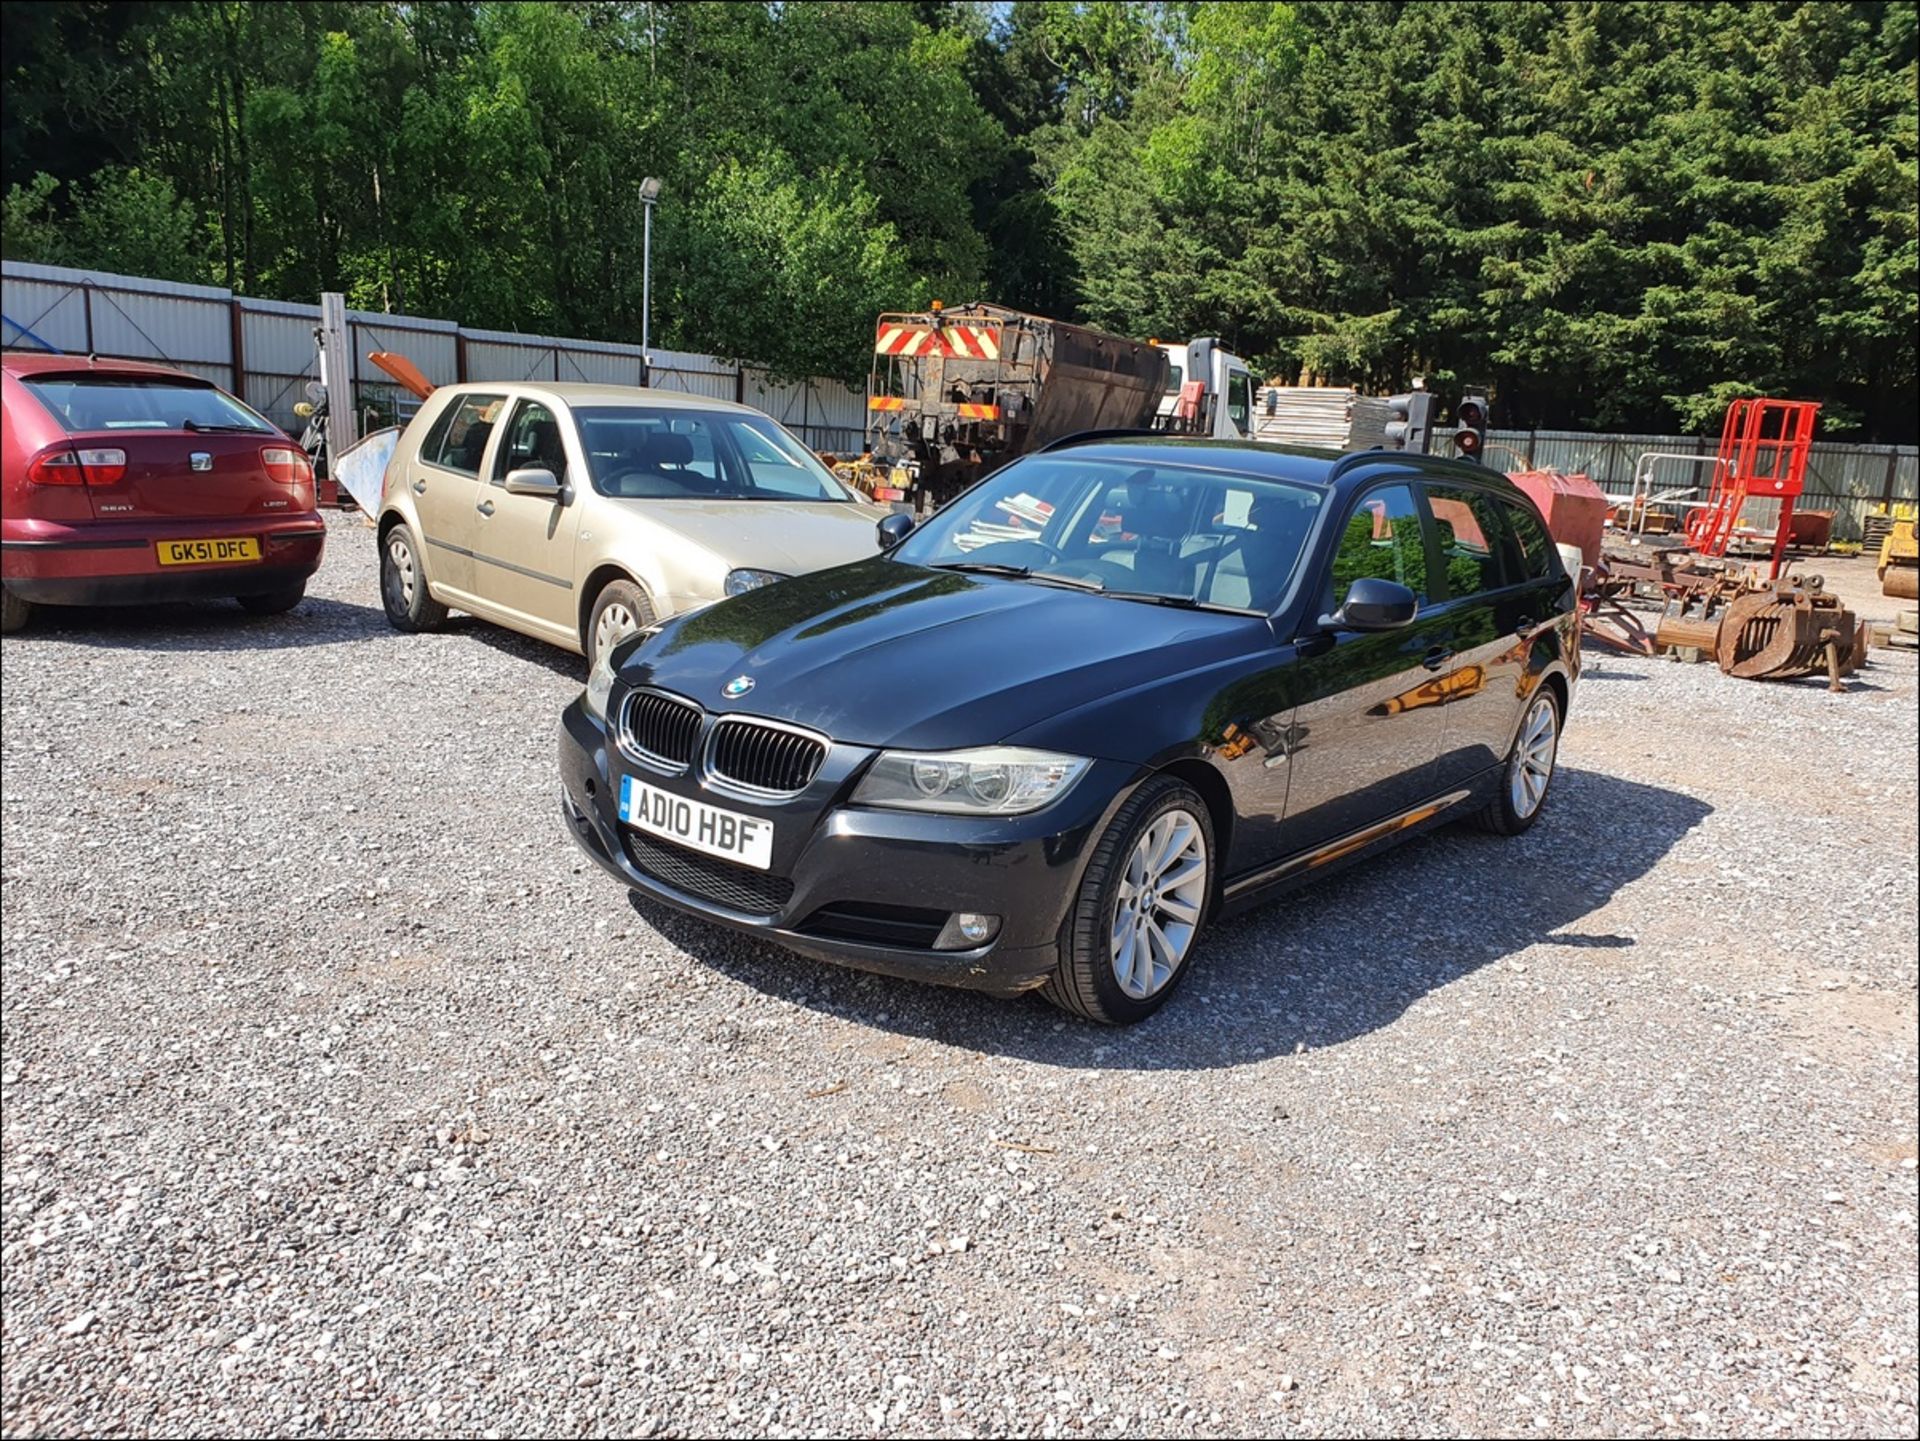 10/10 BMW 320D SE BUSINESS ED 181 - 1995cc 5dr Estate (Black, 164k) - Image 5 of 19